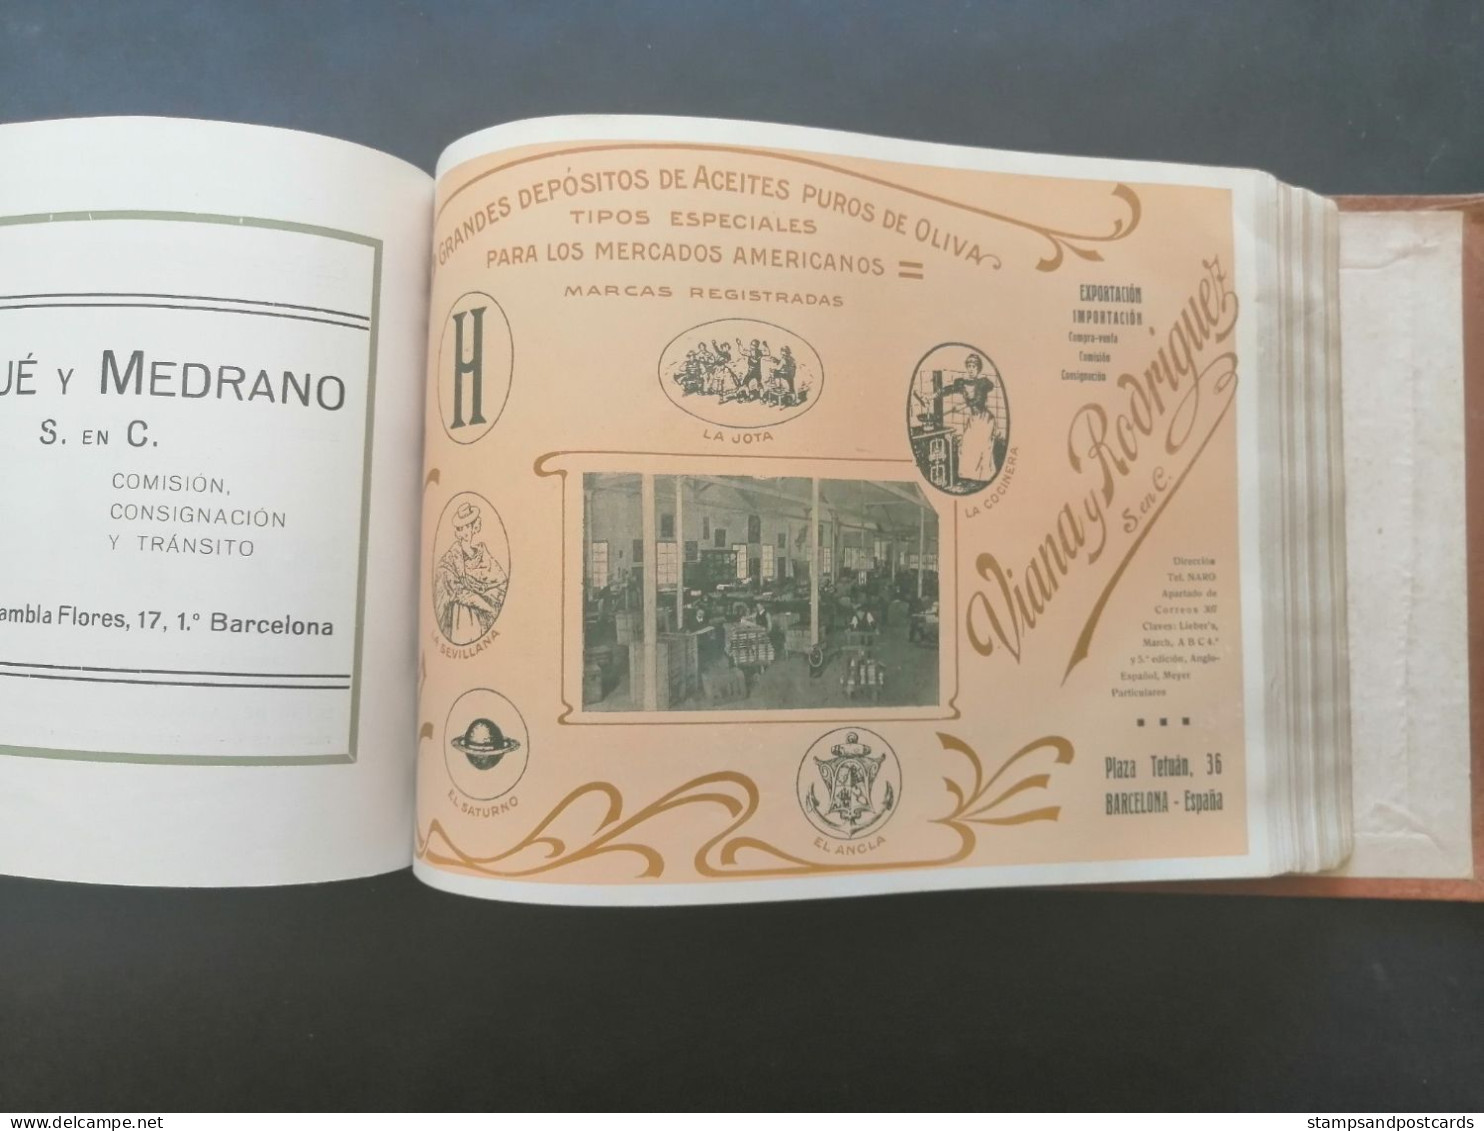 Compañía Trasatlántica Libro de información 1920 Barcelona Catalonia España Spain shipping company handbook Paquebot